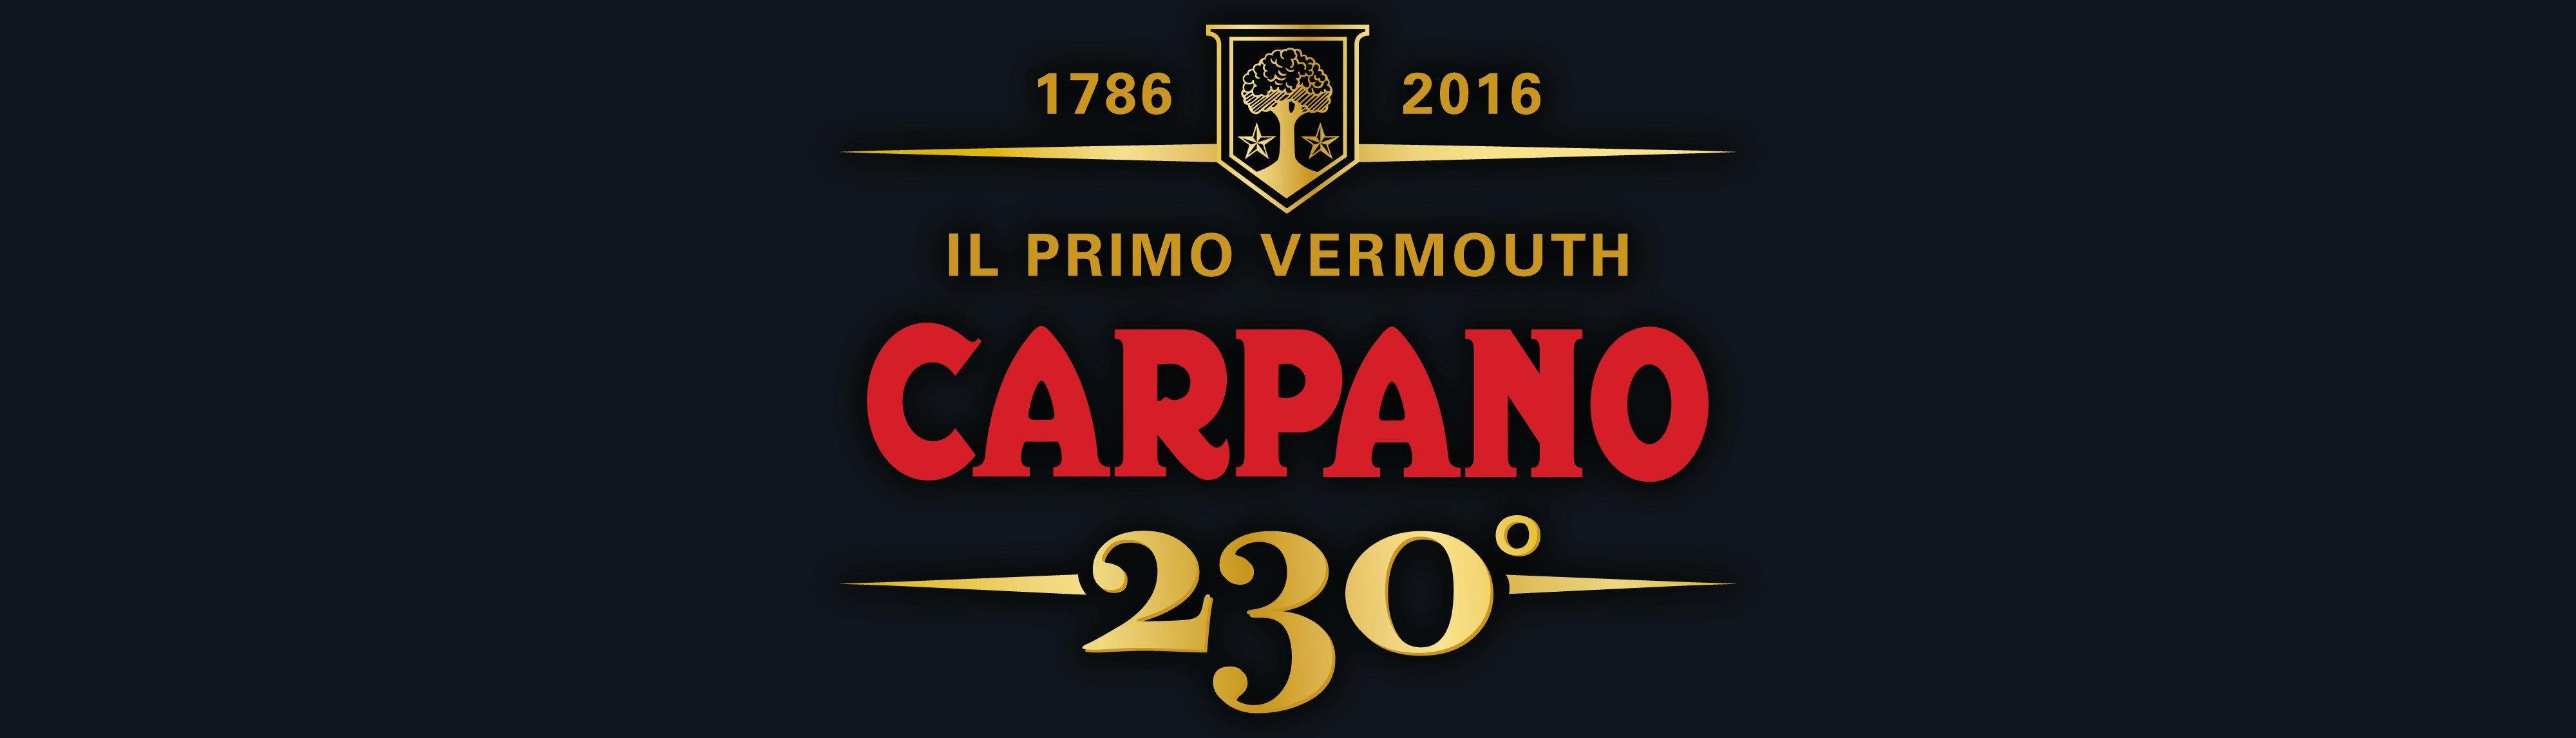 Carpano Logo - Carpano-banner01 | Hi-Spirits